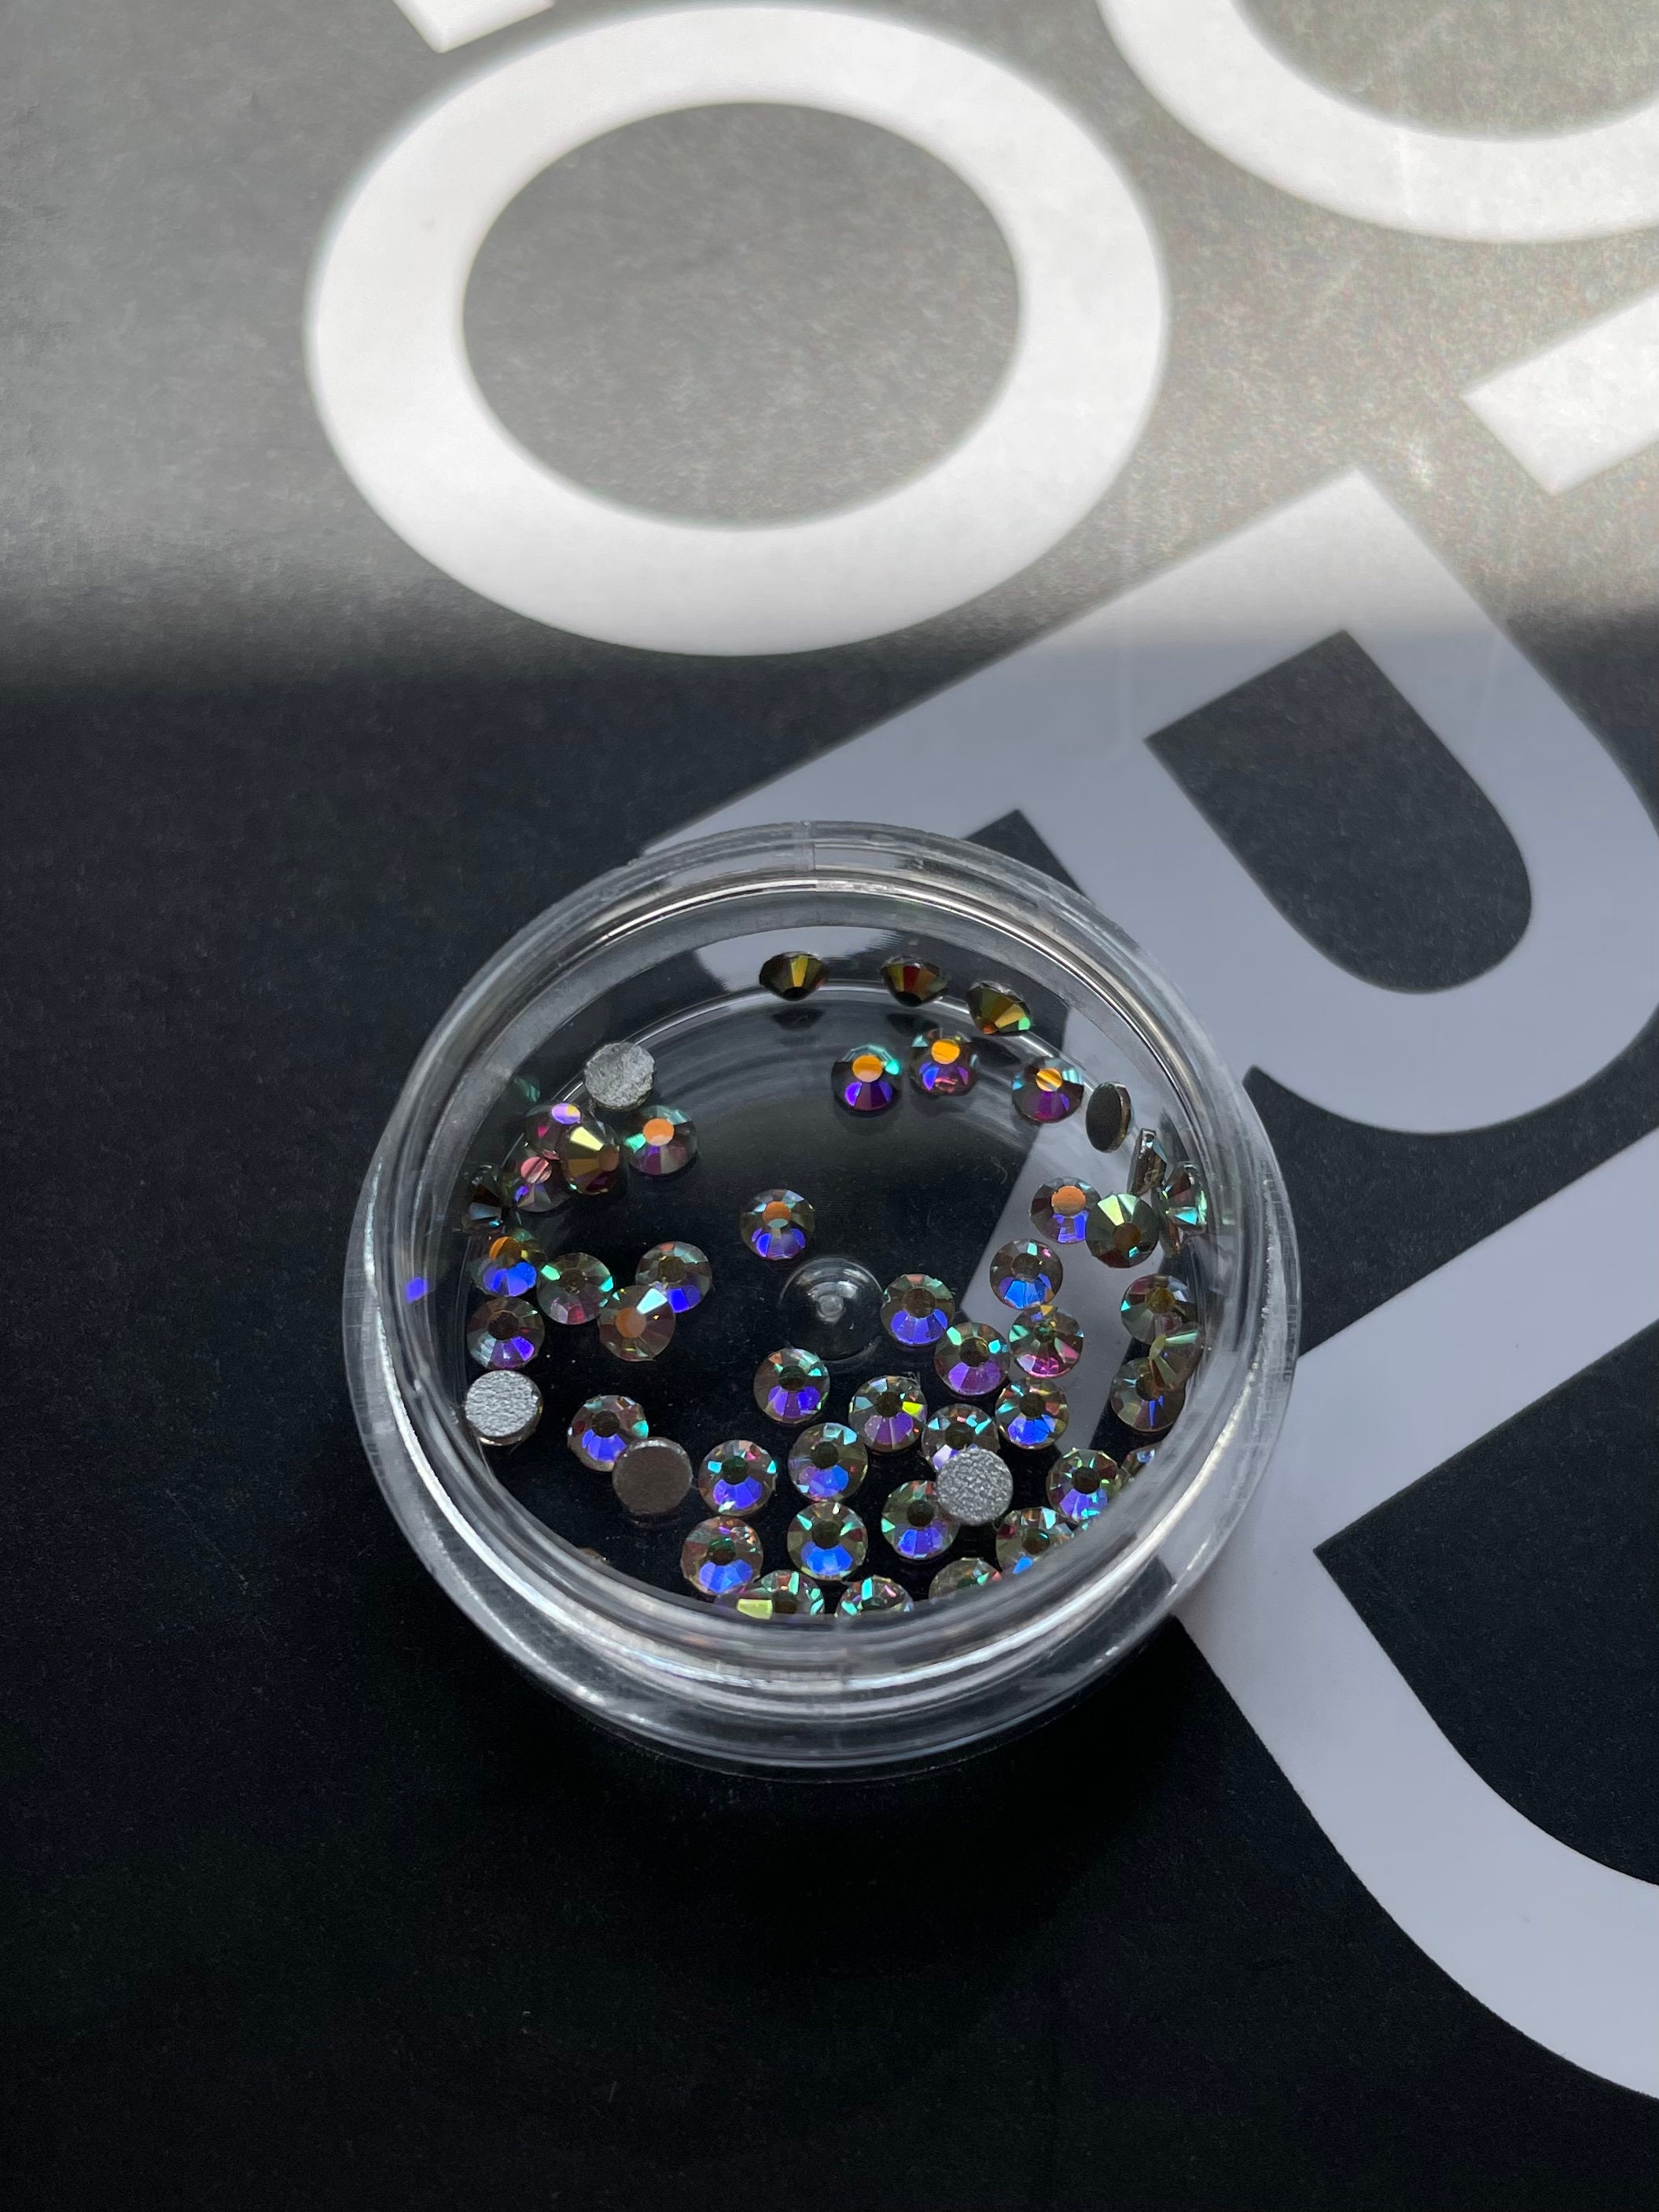 1440pcs Tooth Gems Preciosa® Crystal Pixie Dust AB Crystal Lead-free Gems  Nonhotfix Designs Foiled Rhinestones -  Israel